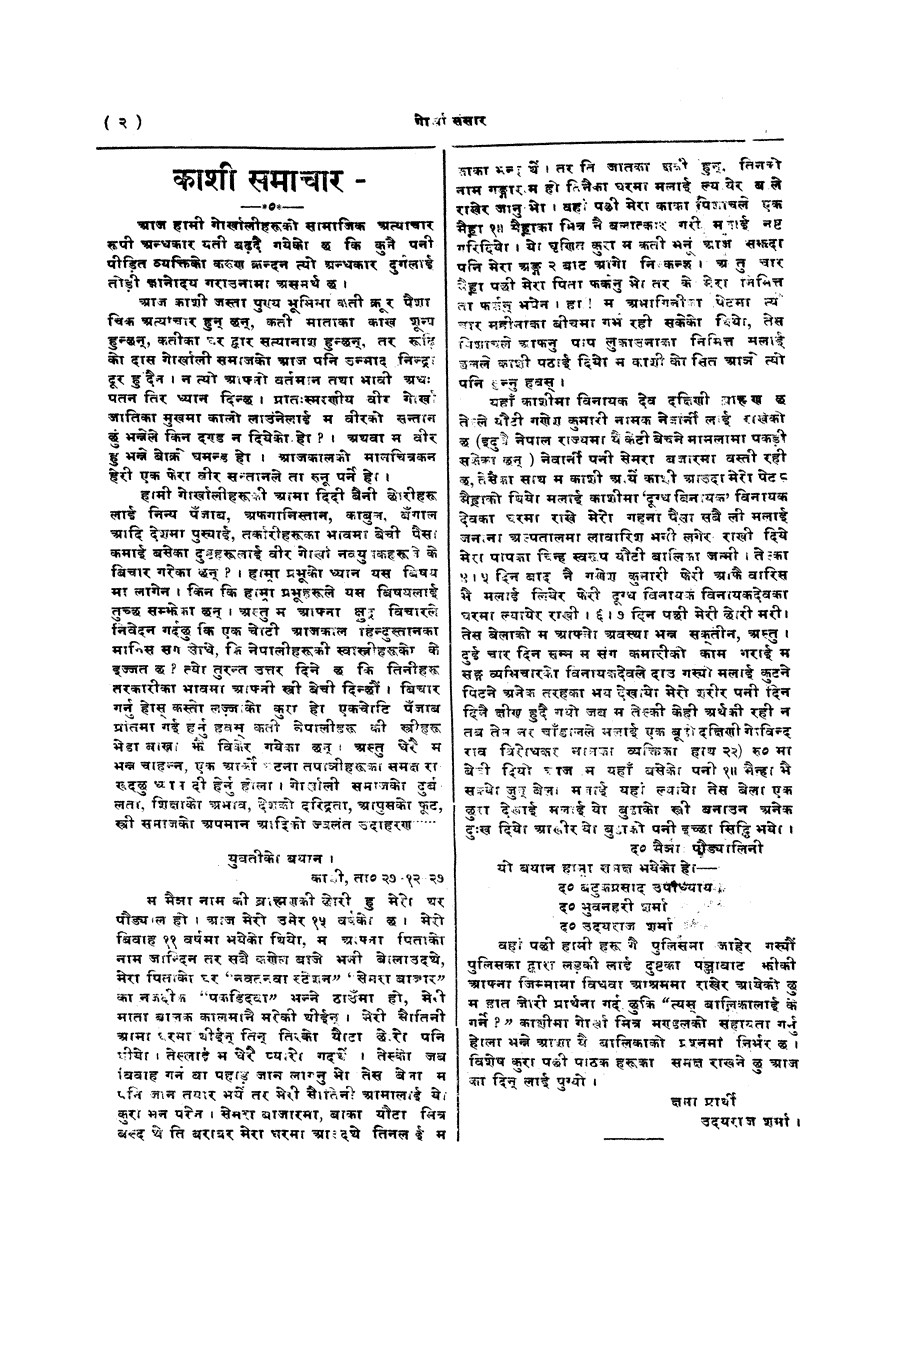 Gorkha Sansar, 17 Jan 1928, page 2